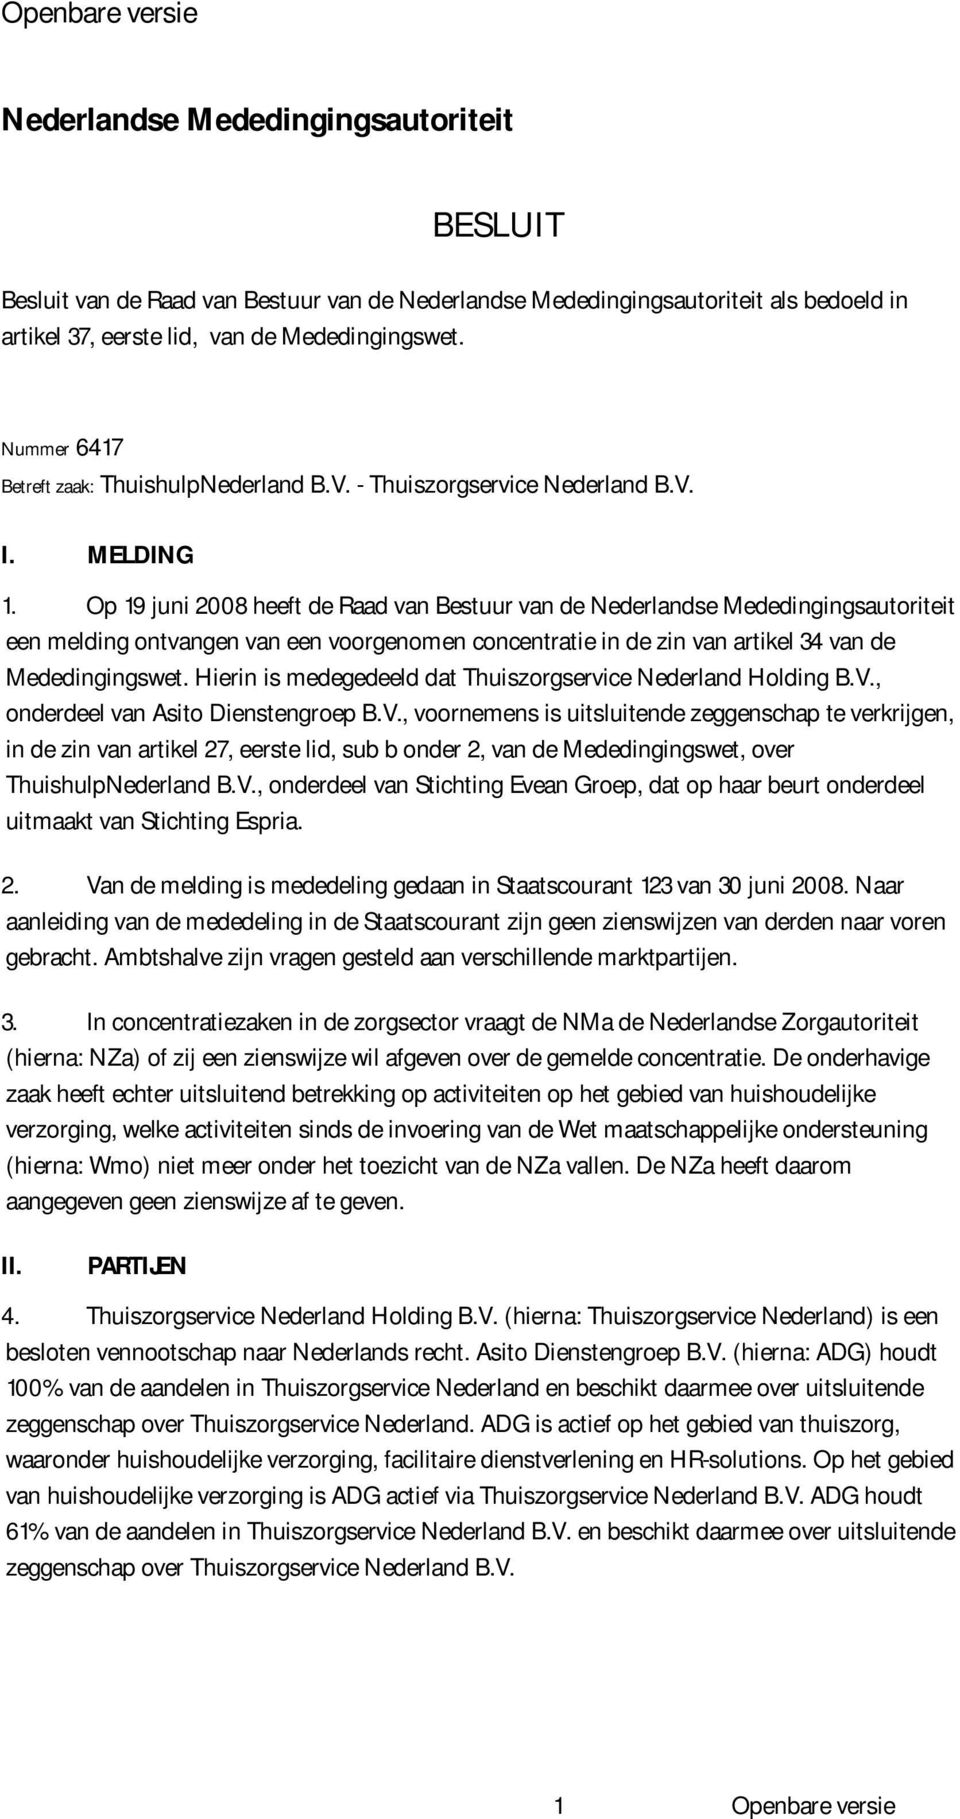 Op 19 juni 2008 heeft de Raad van Bestuur van de Nederlandse Mededingingsautoriteit een melding ontvangen van een voorgenomen concentratie in de zin van artikel 34 van de Mededingingswet.